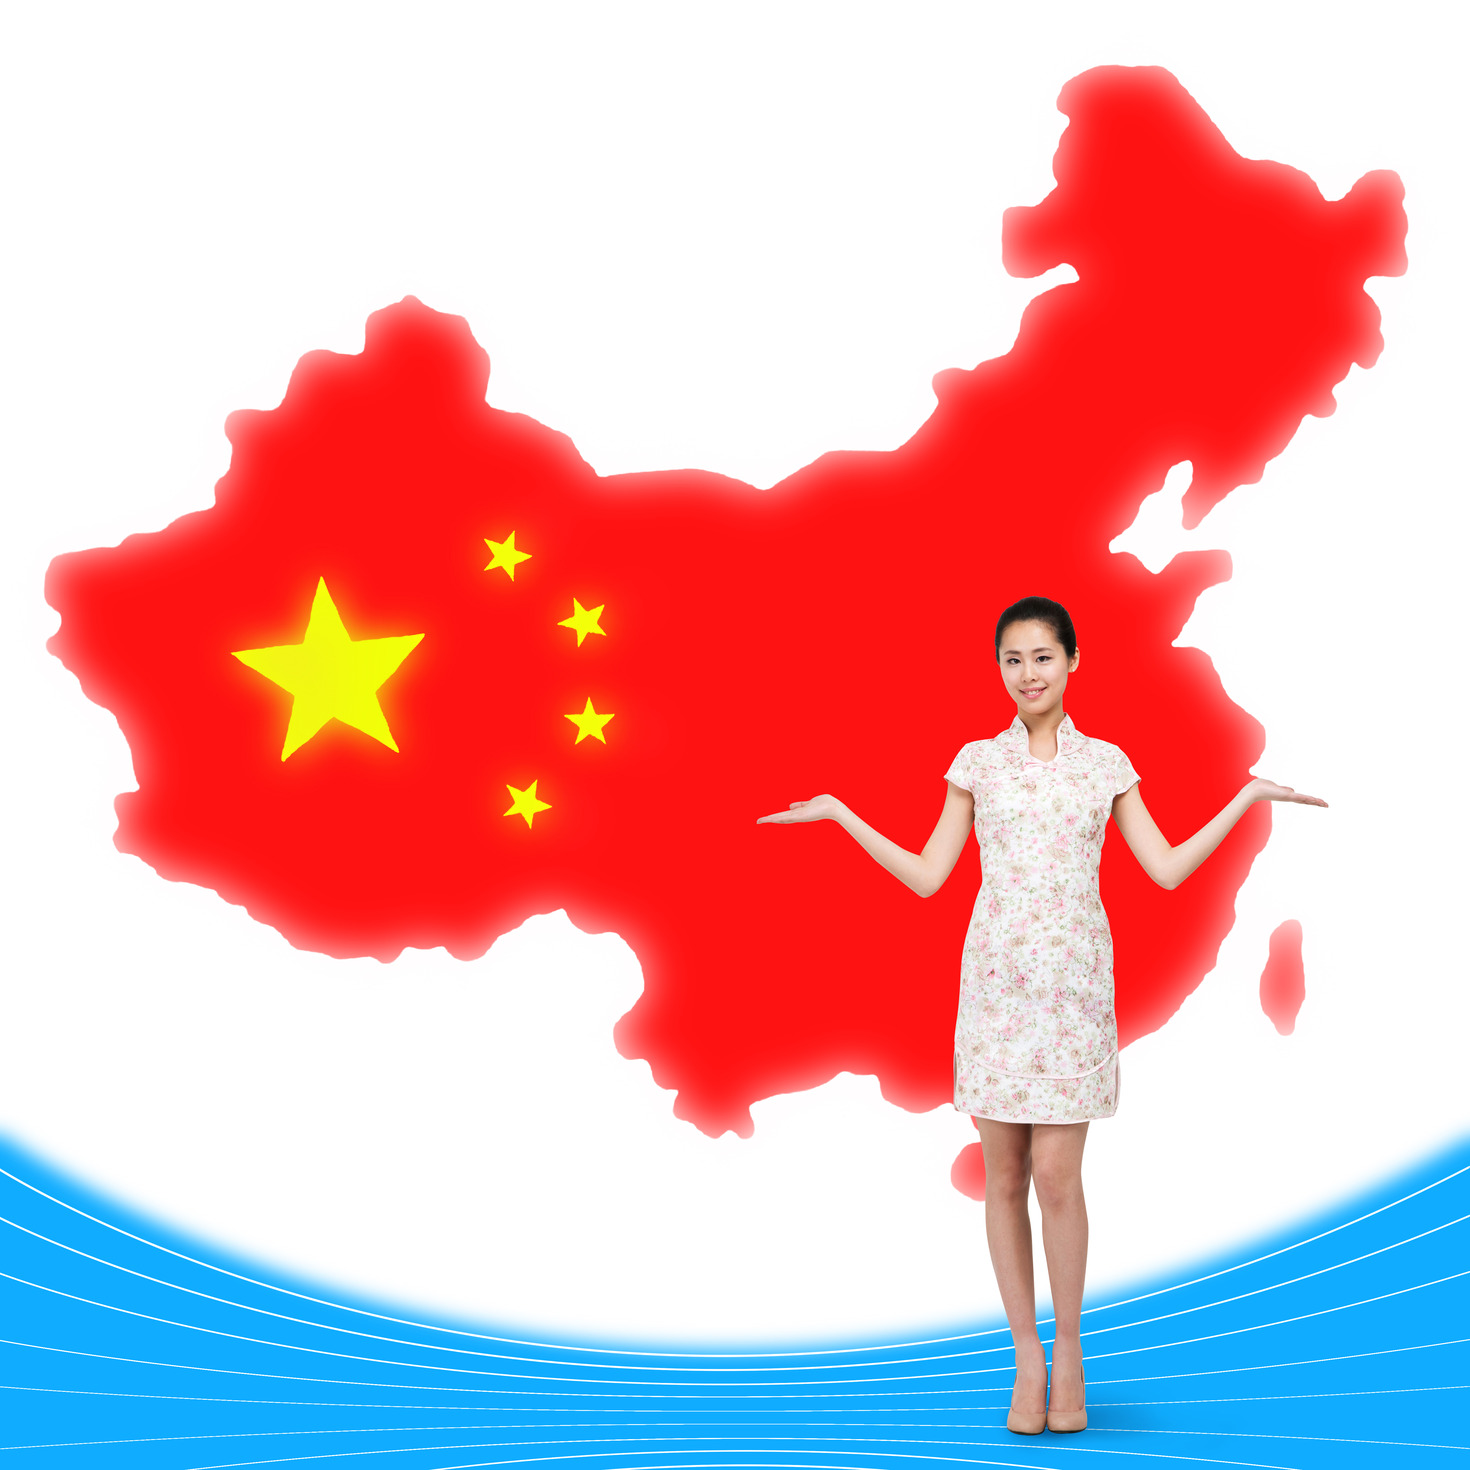 중국의 국토종합개발정책으로 본 진출 전략